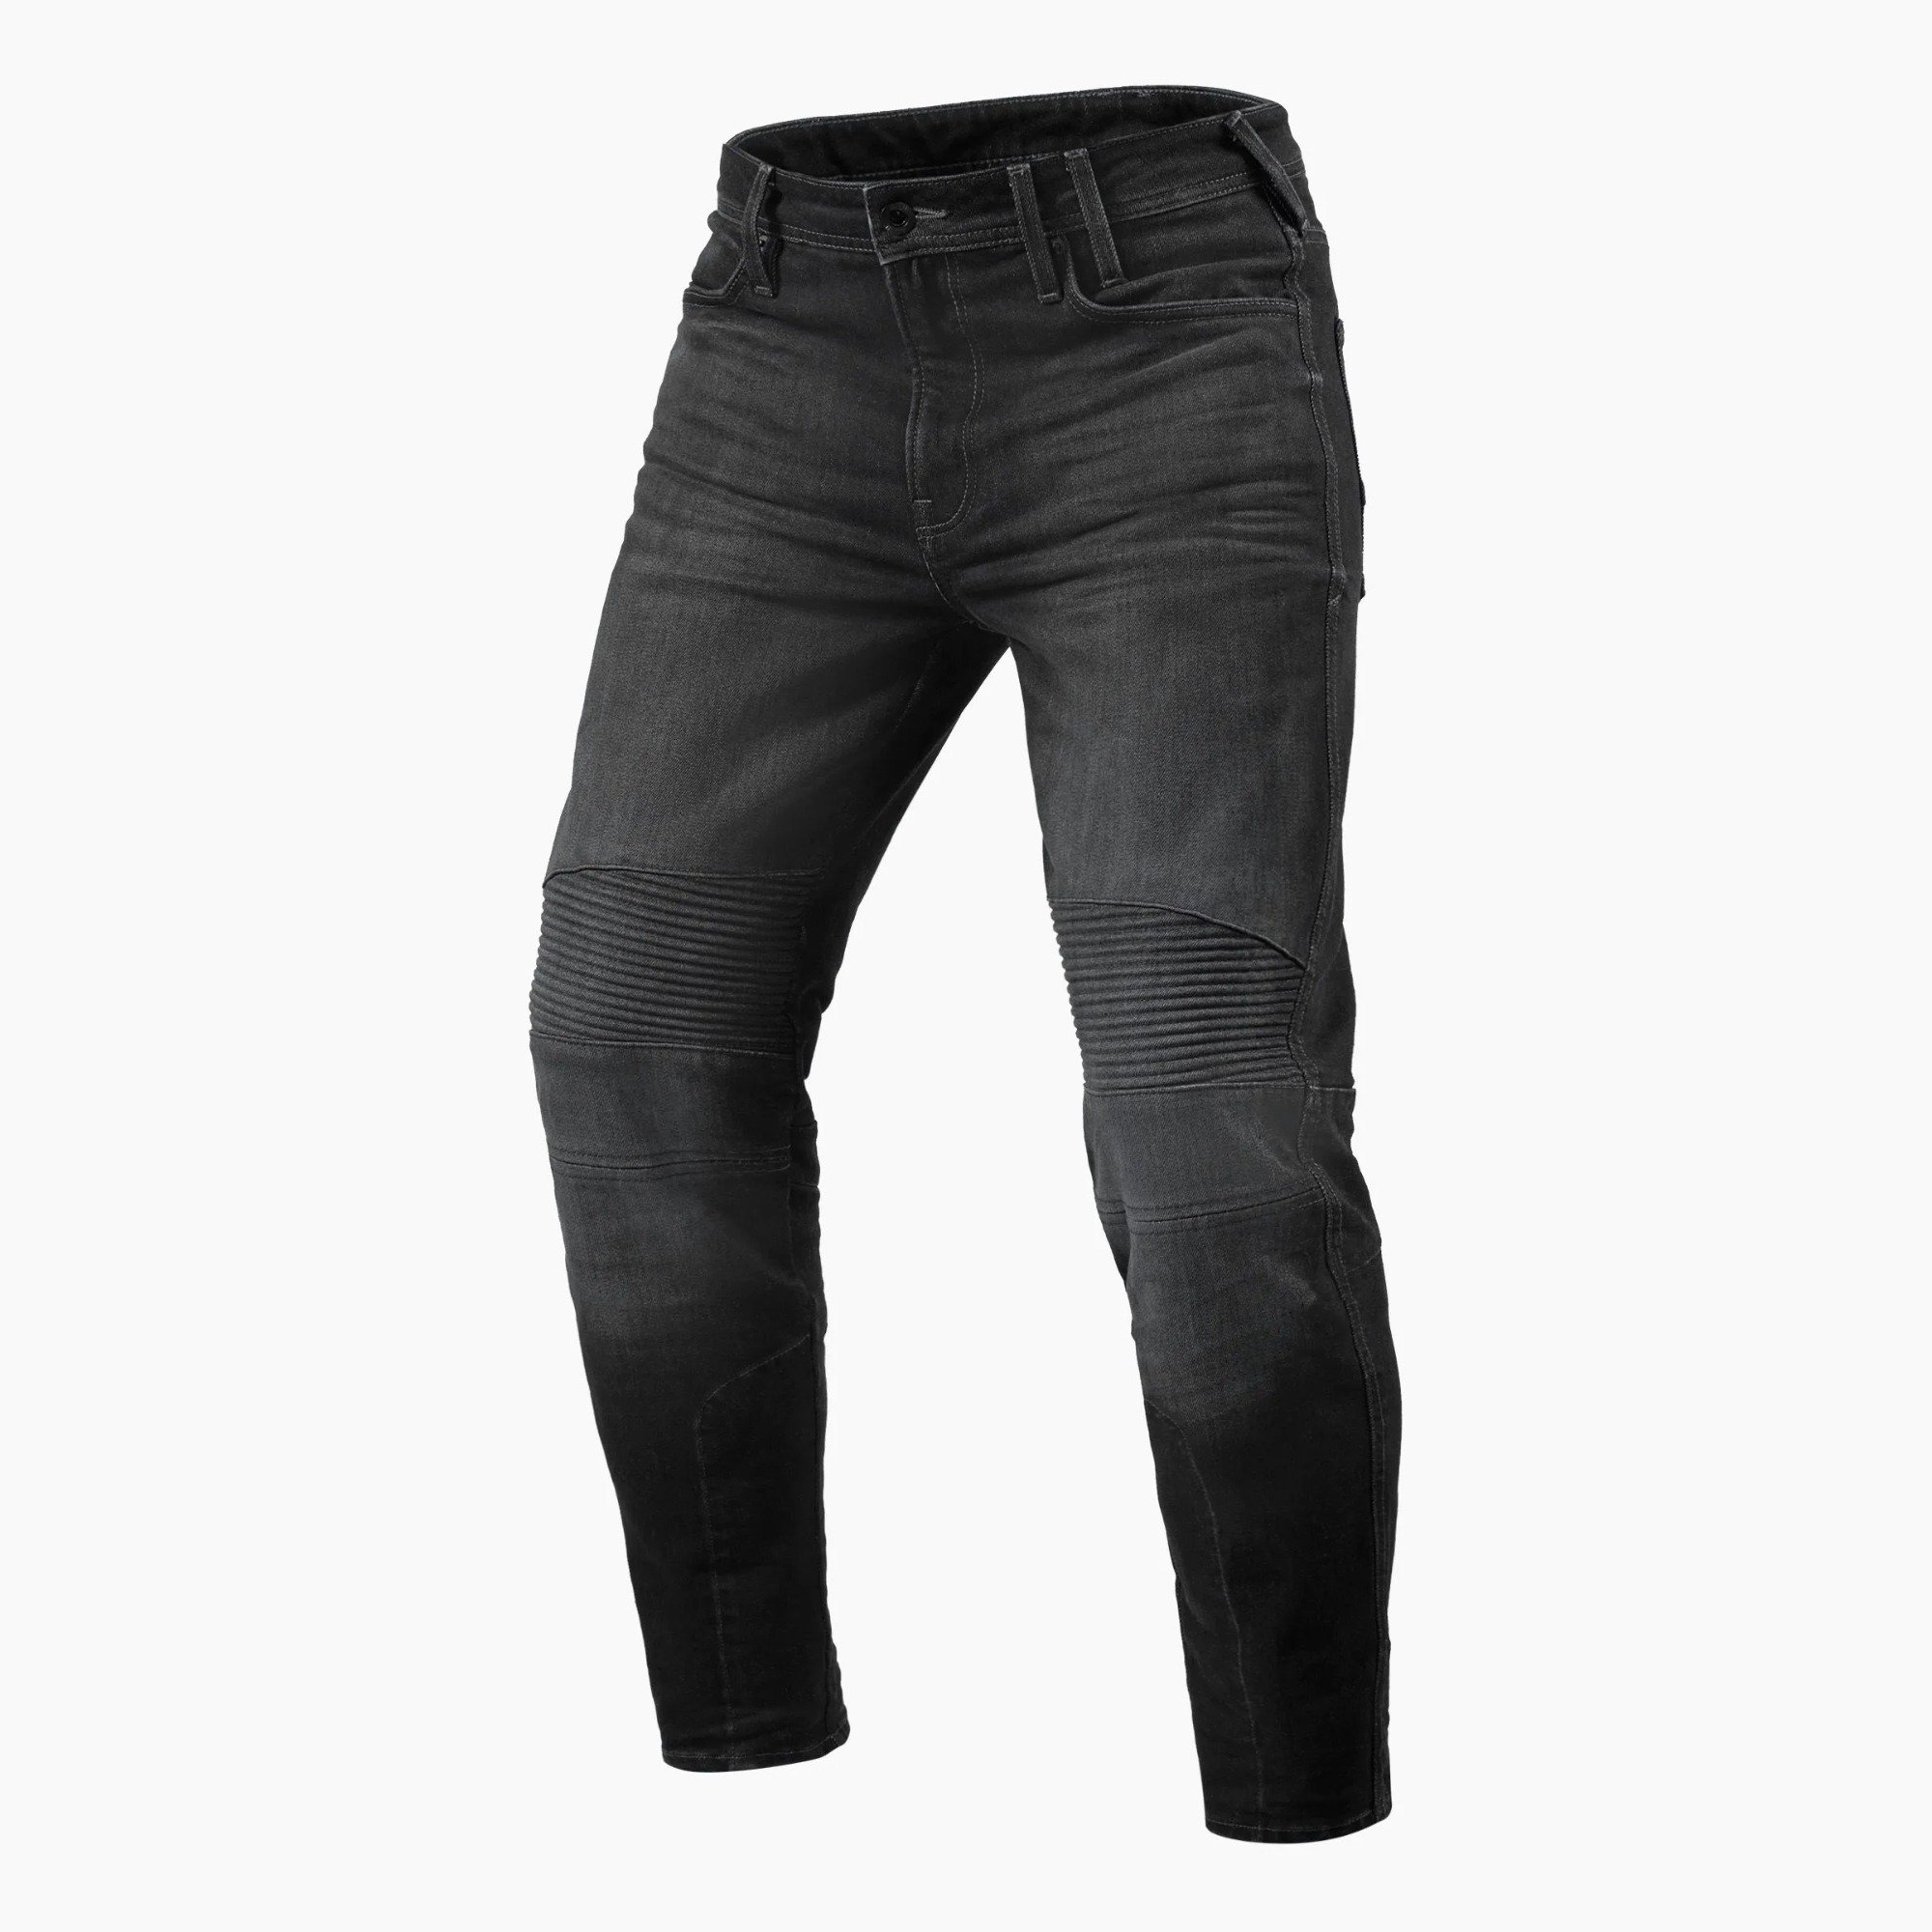 Image of REV'IT! Jeans Moto 2 TF Dark Grey Used Motorcycle Jeans Size L34/W28 EN